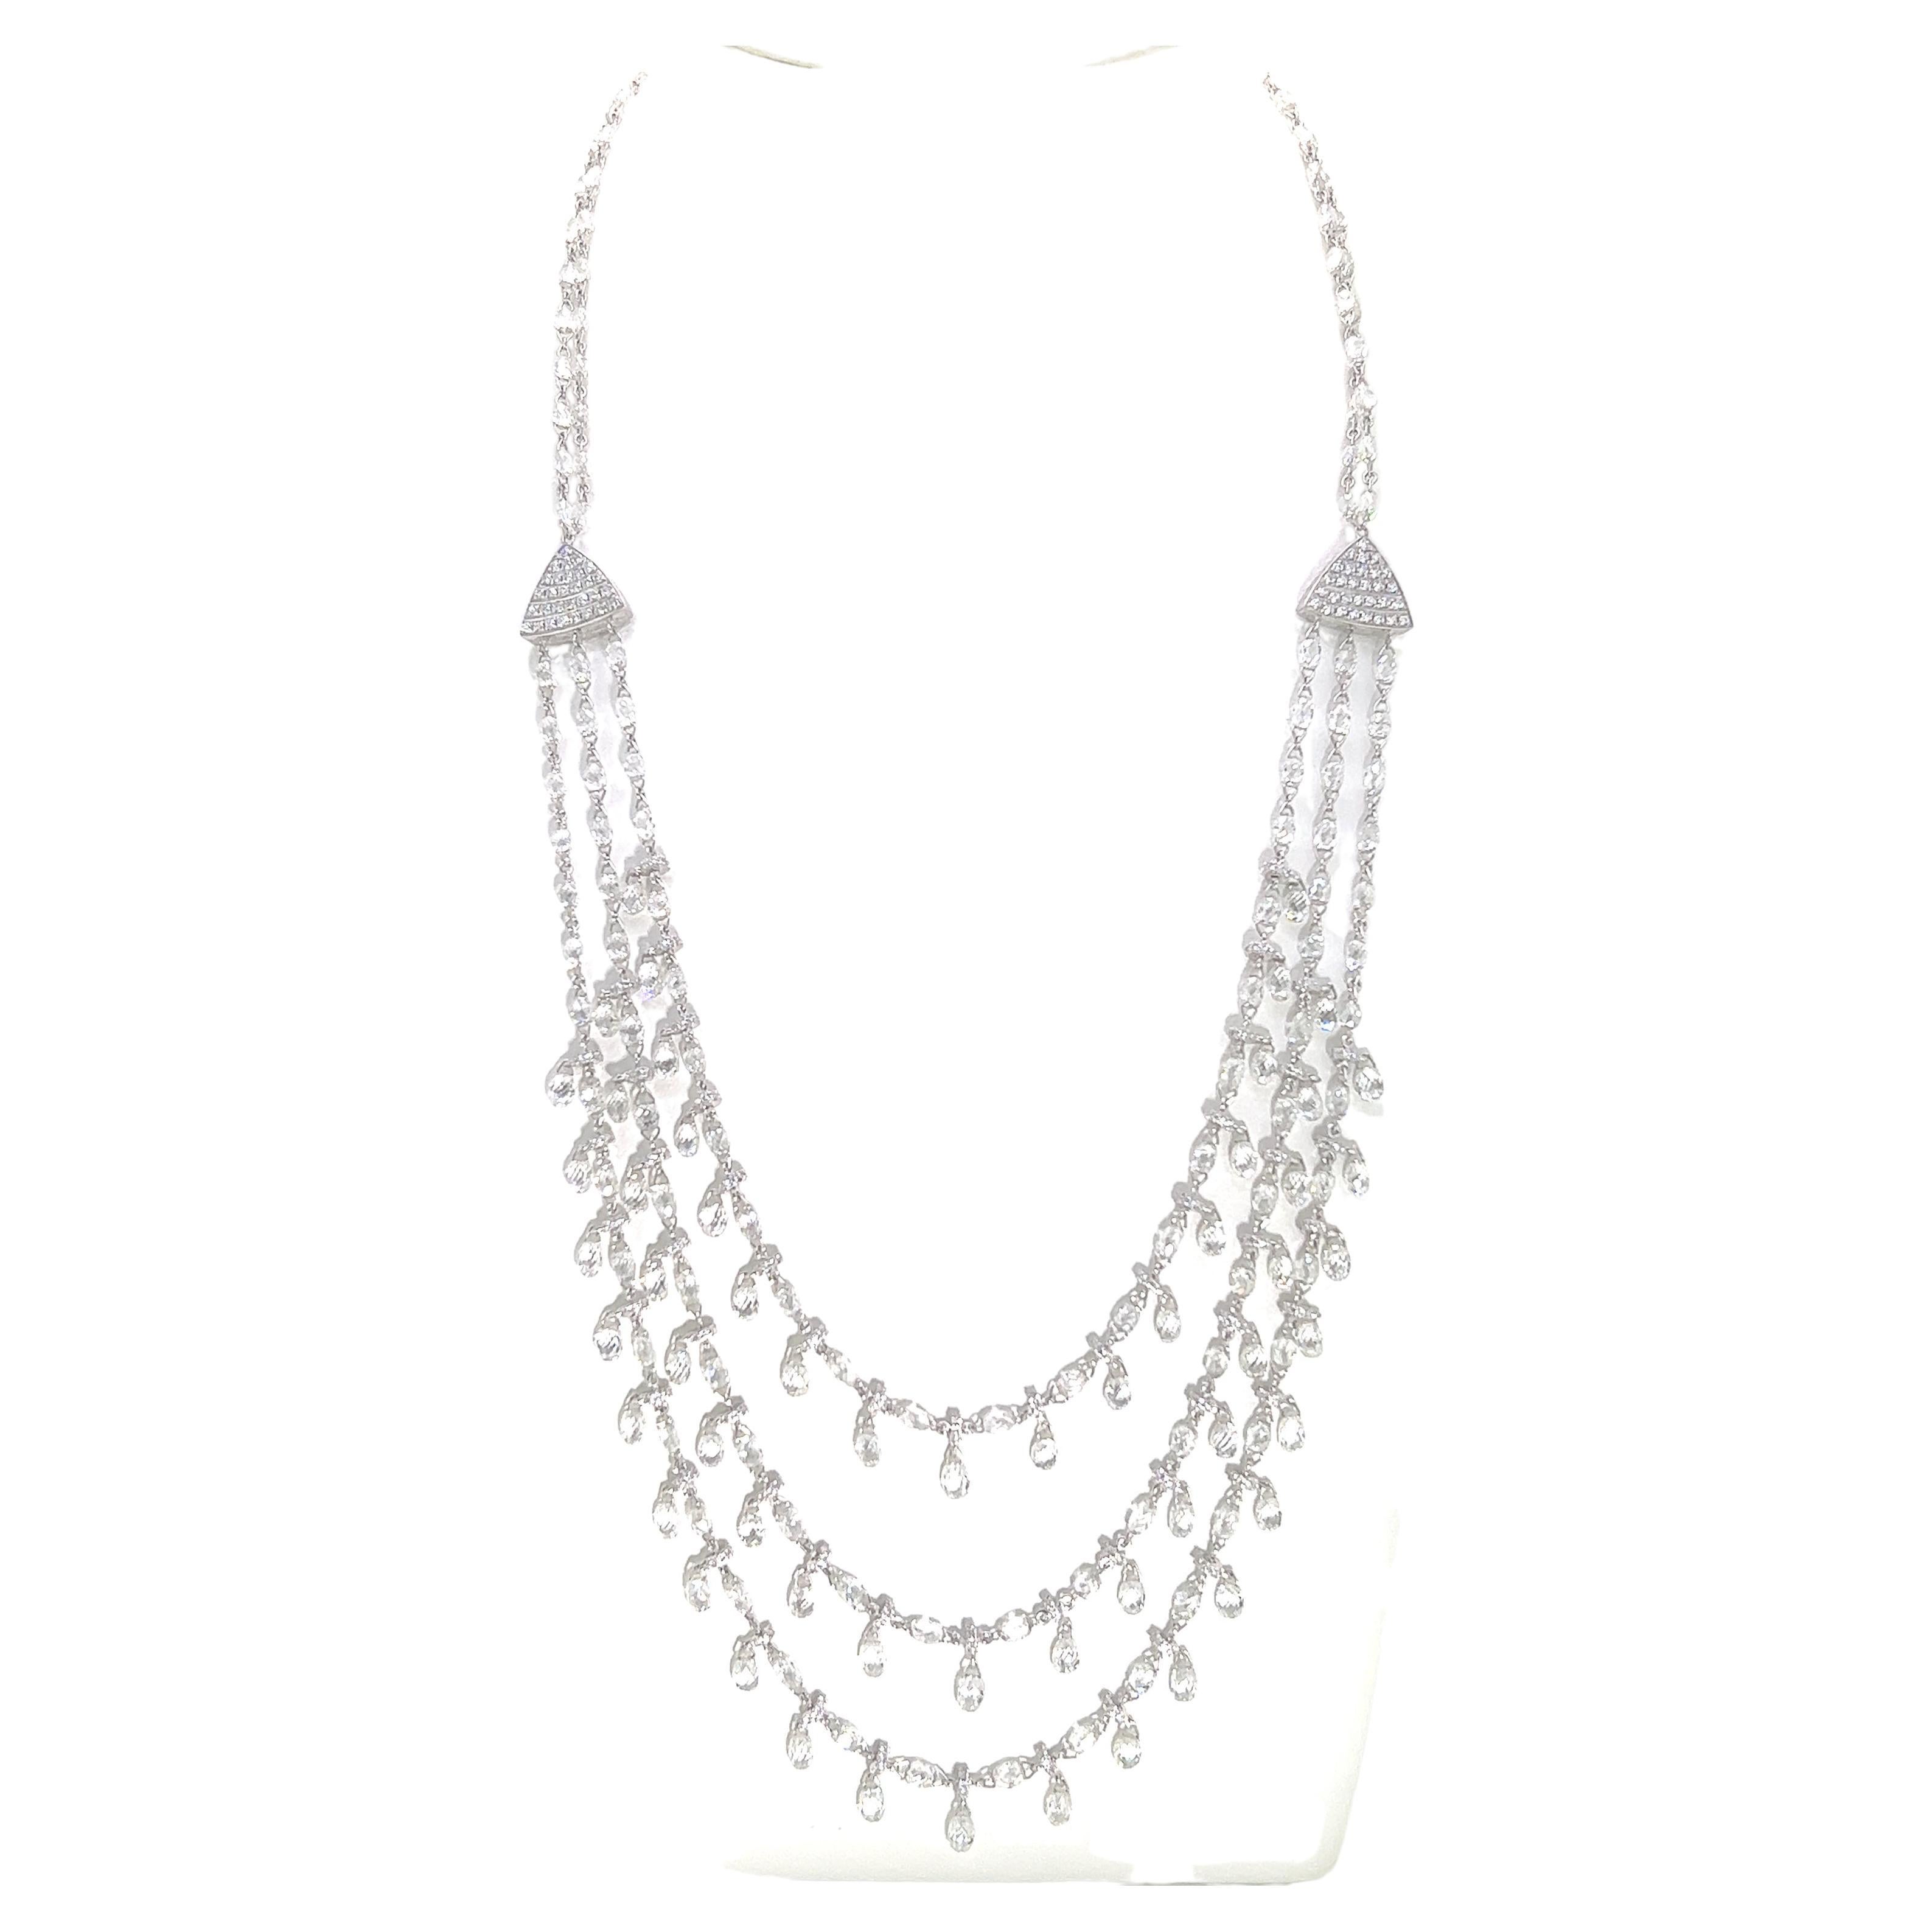 38.89 Carat Vintage Briolette Cut Diamond Necklace Set on 18K White Gold